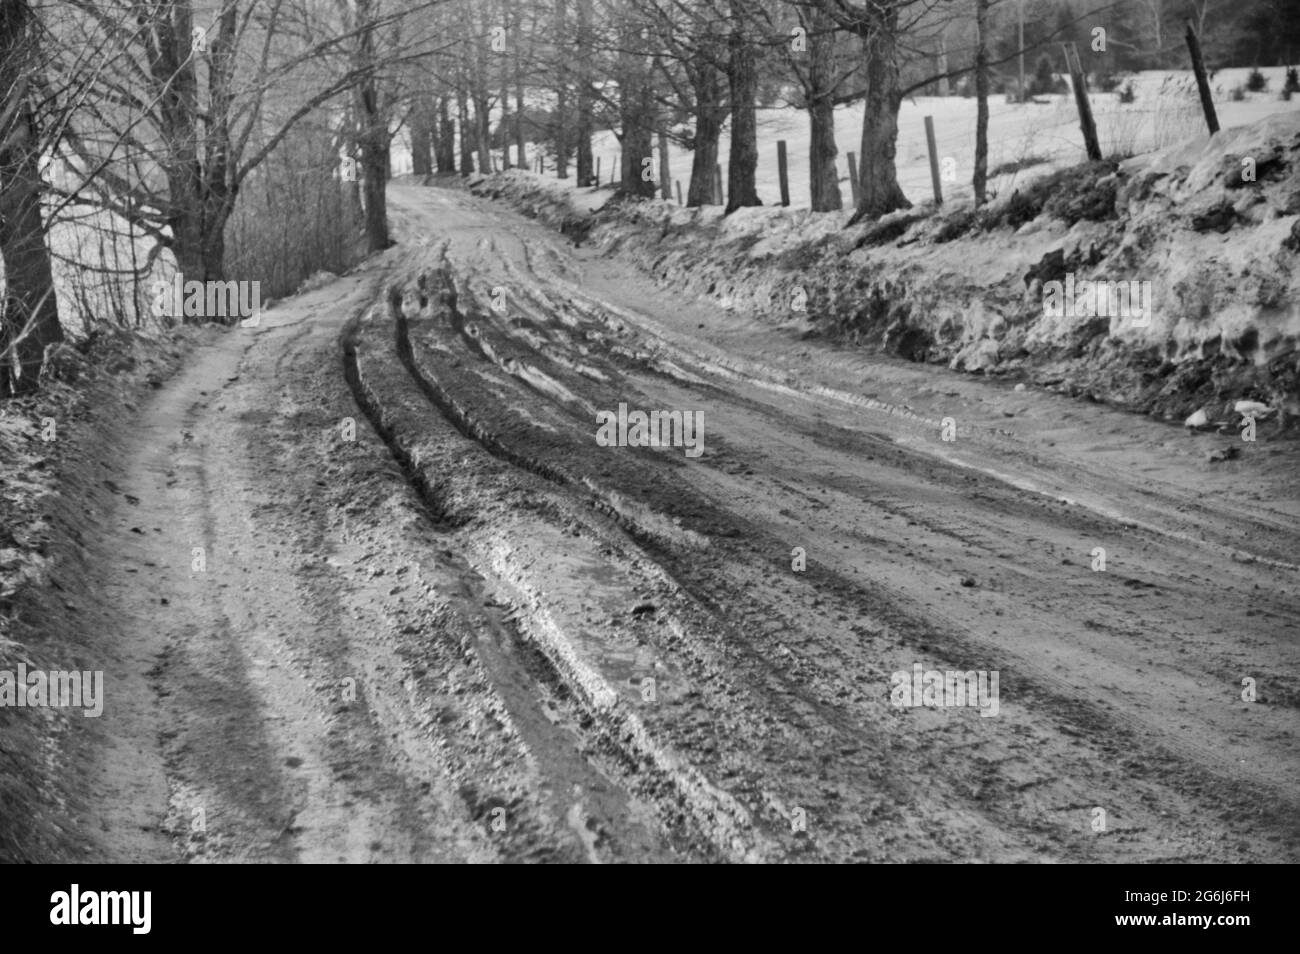 Route boueuse après dégel, près de Stowe, Vermont, vers 1940 Banque D'Images